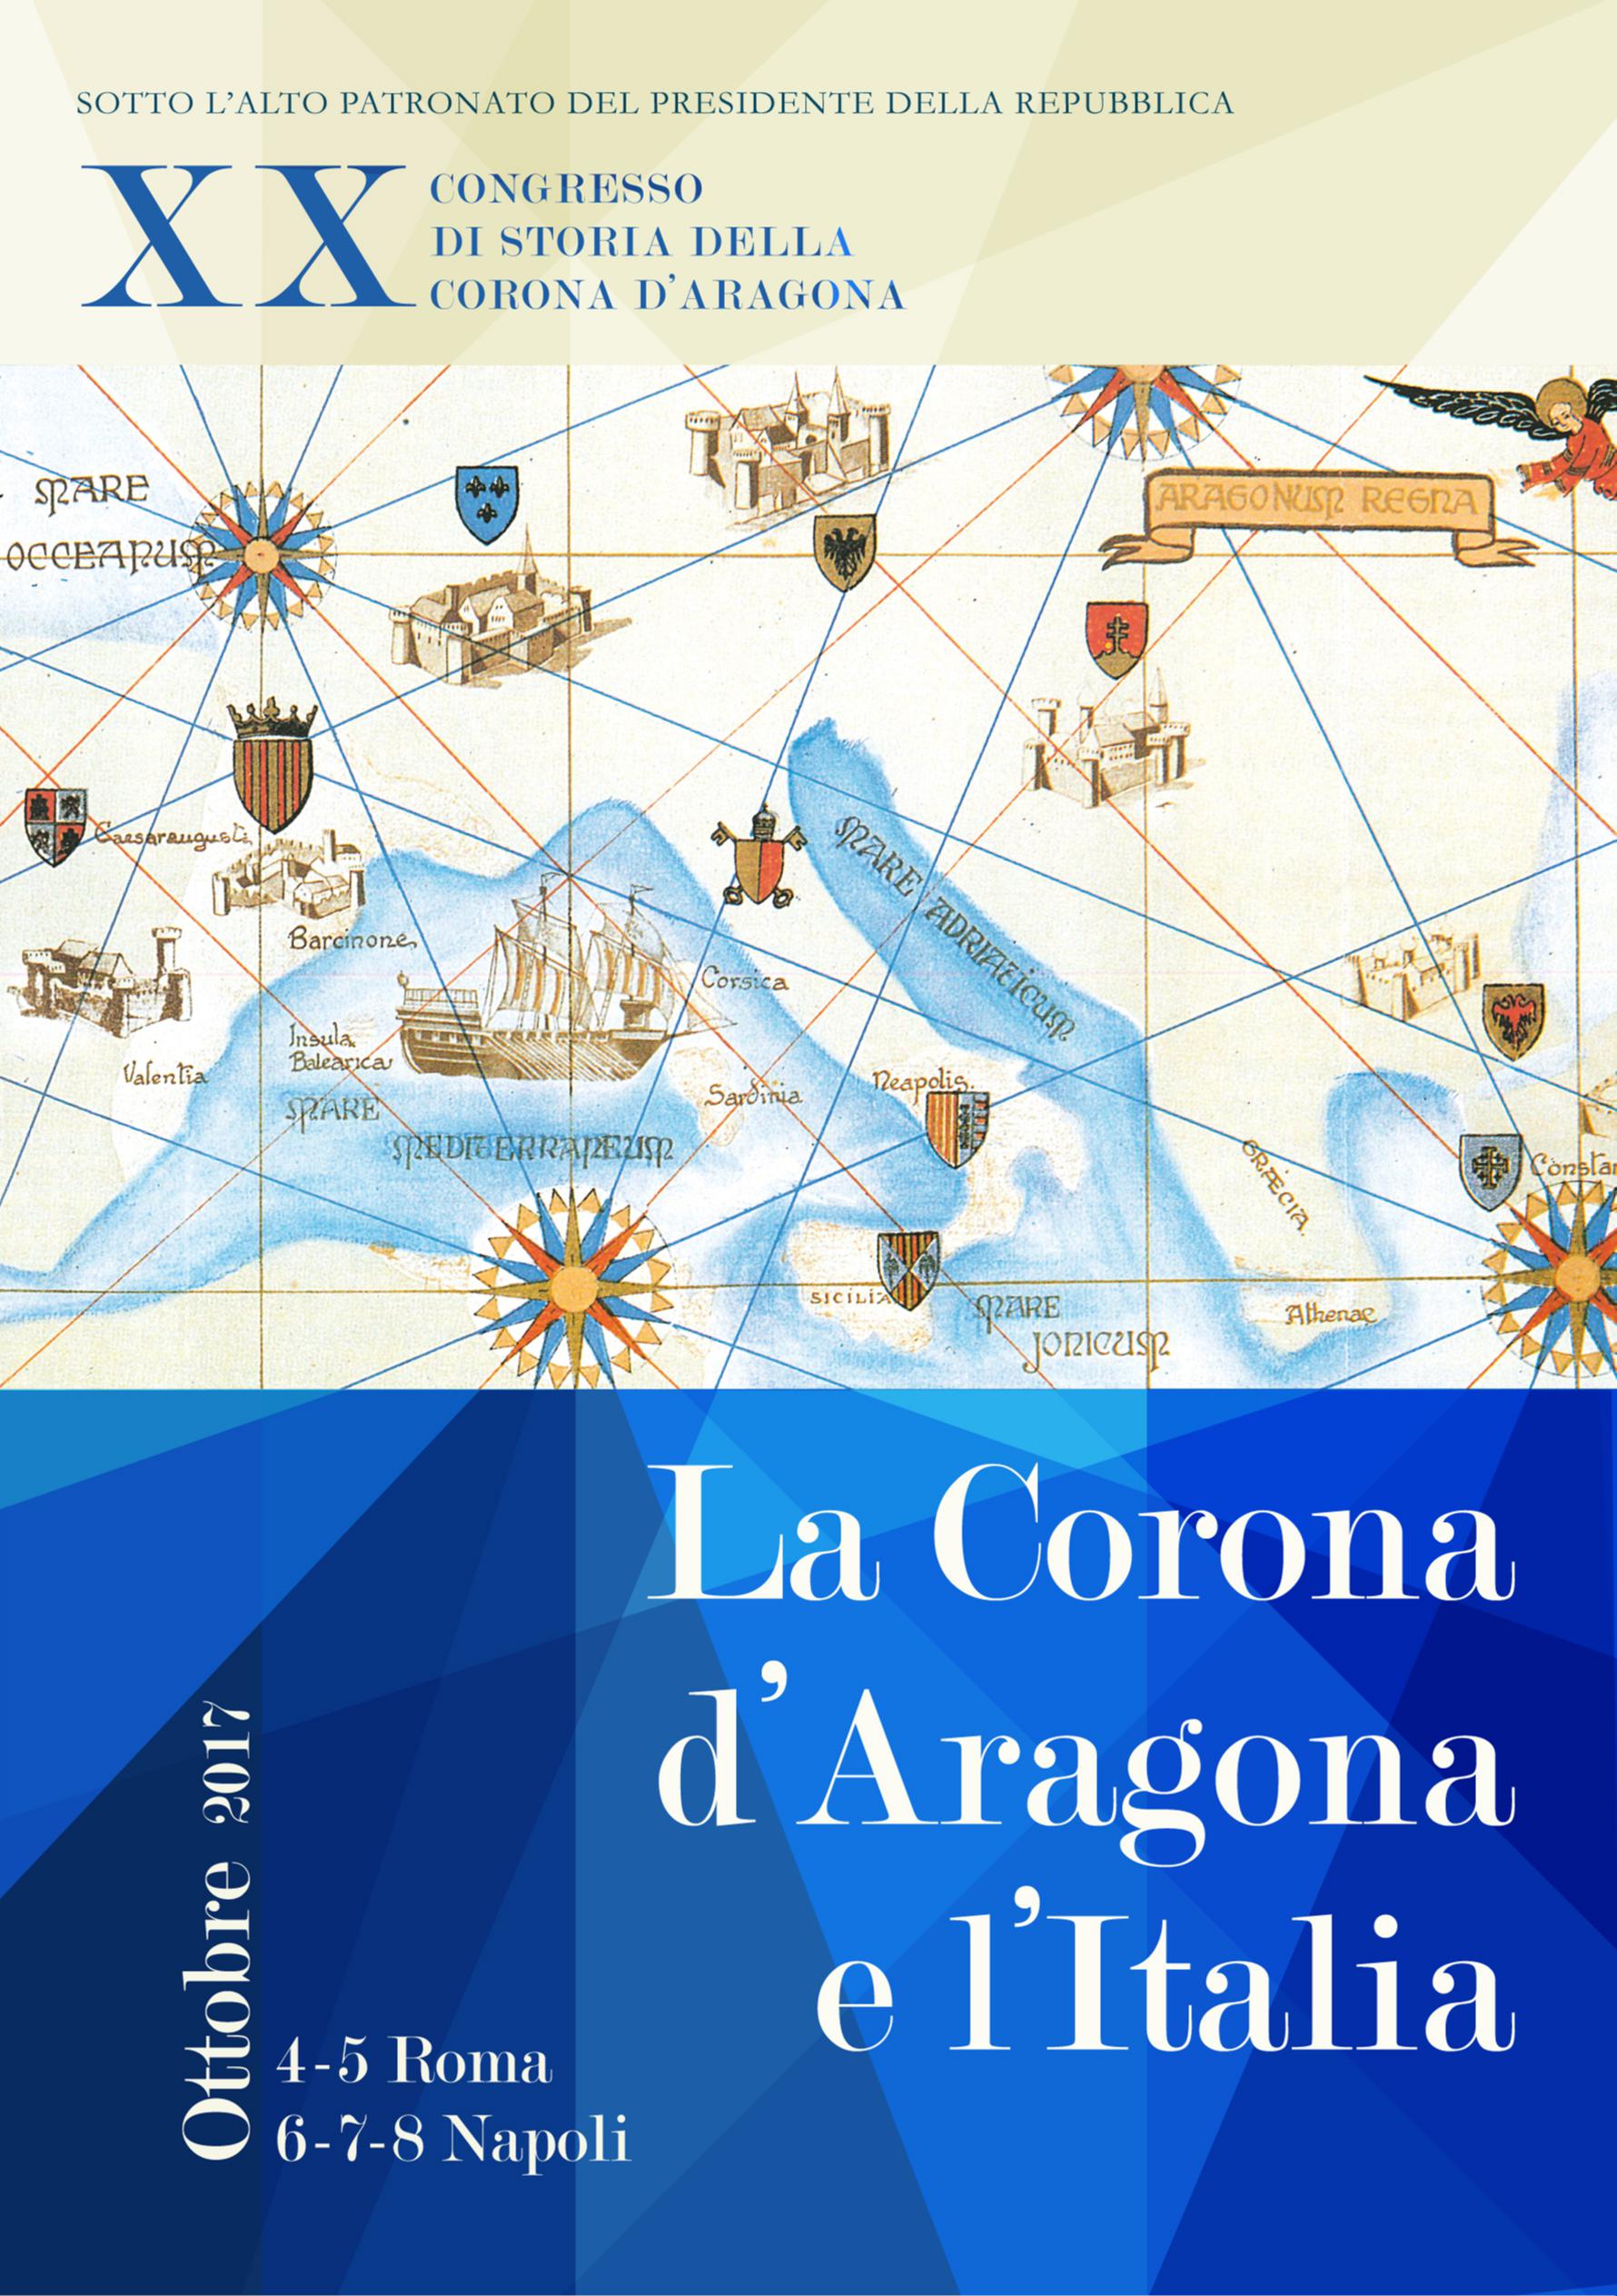 XX Corona d'Aragona